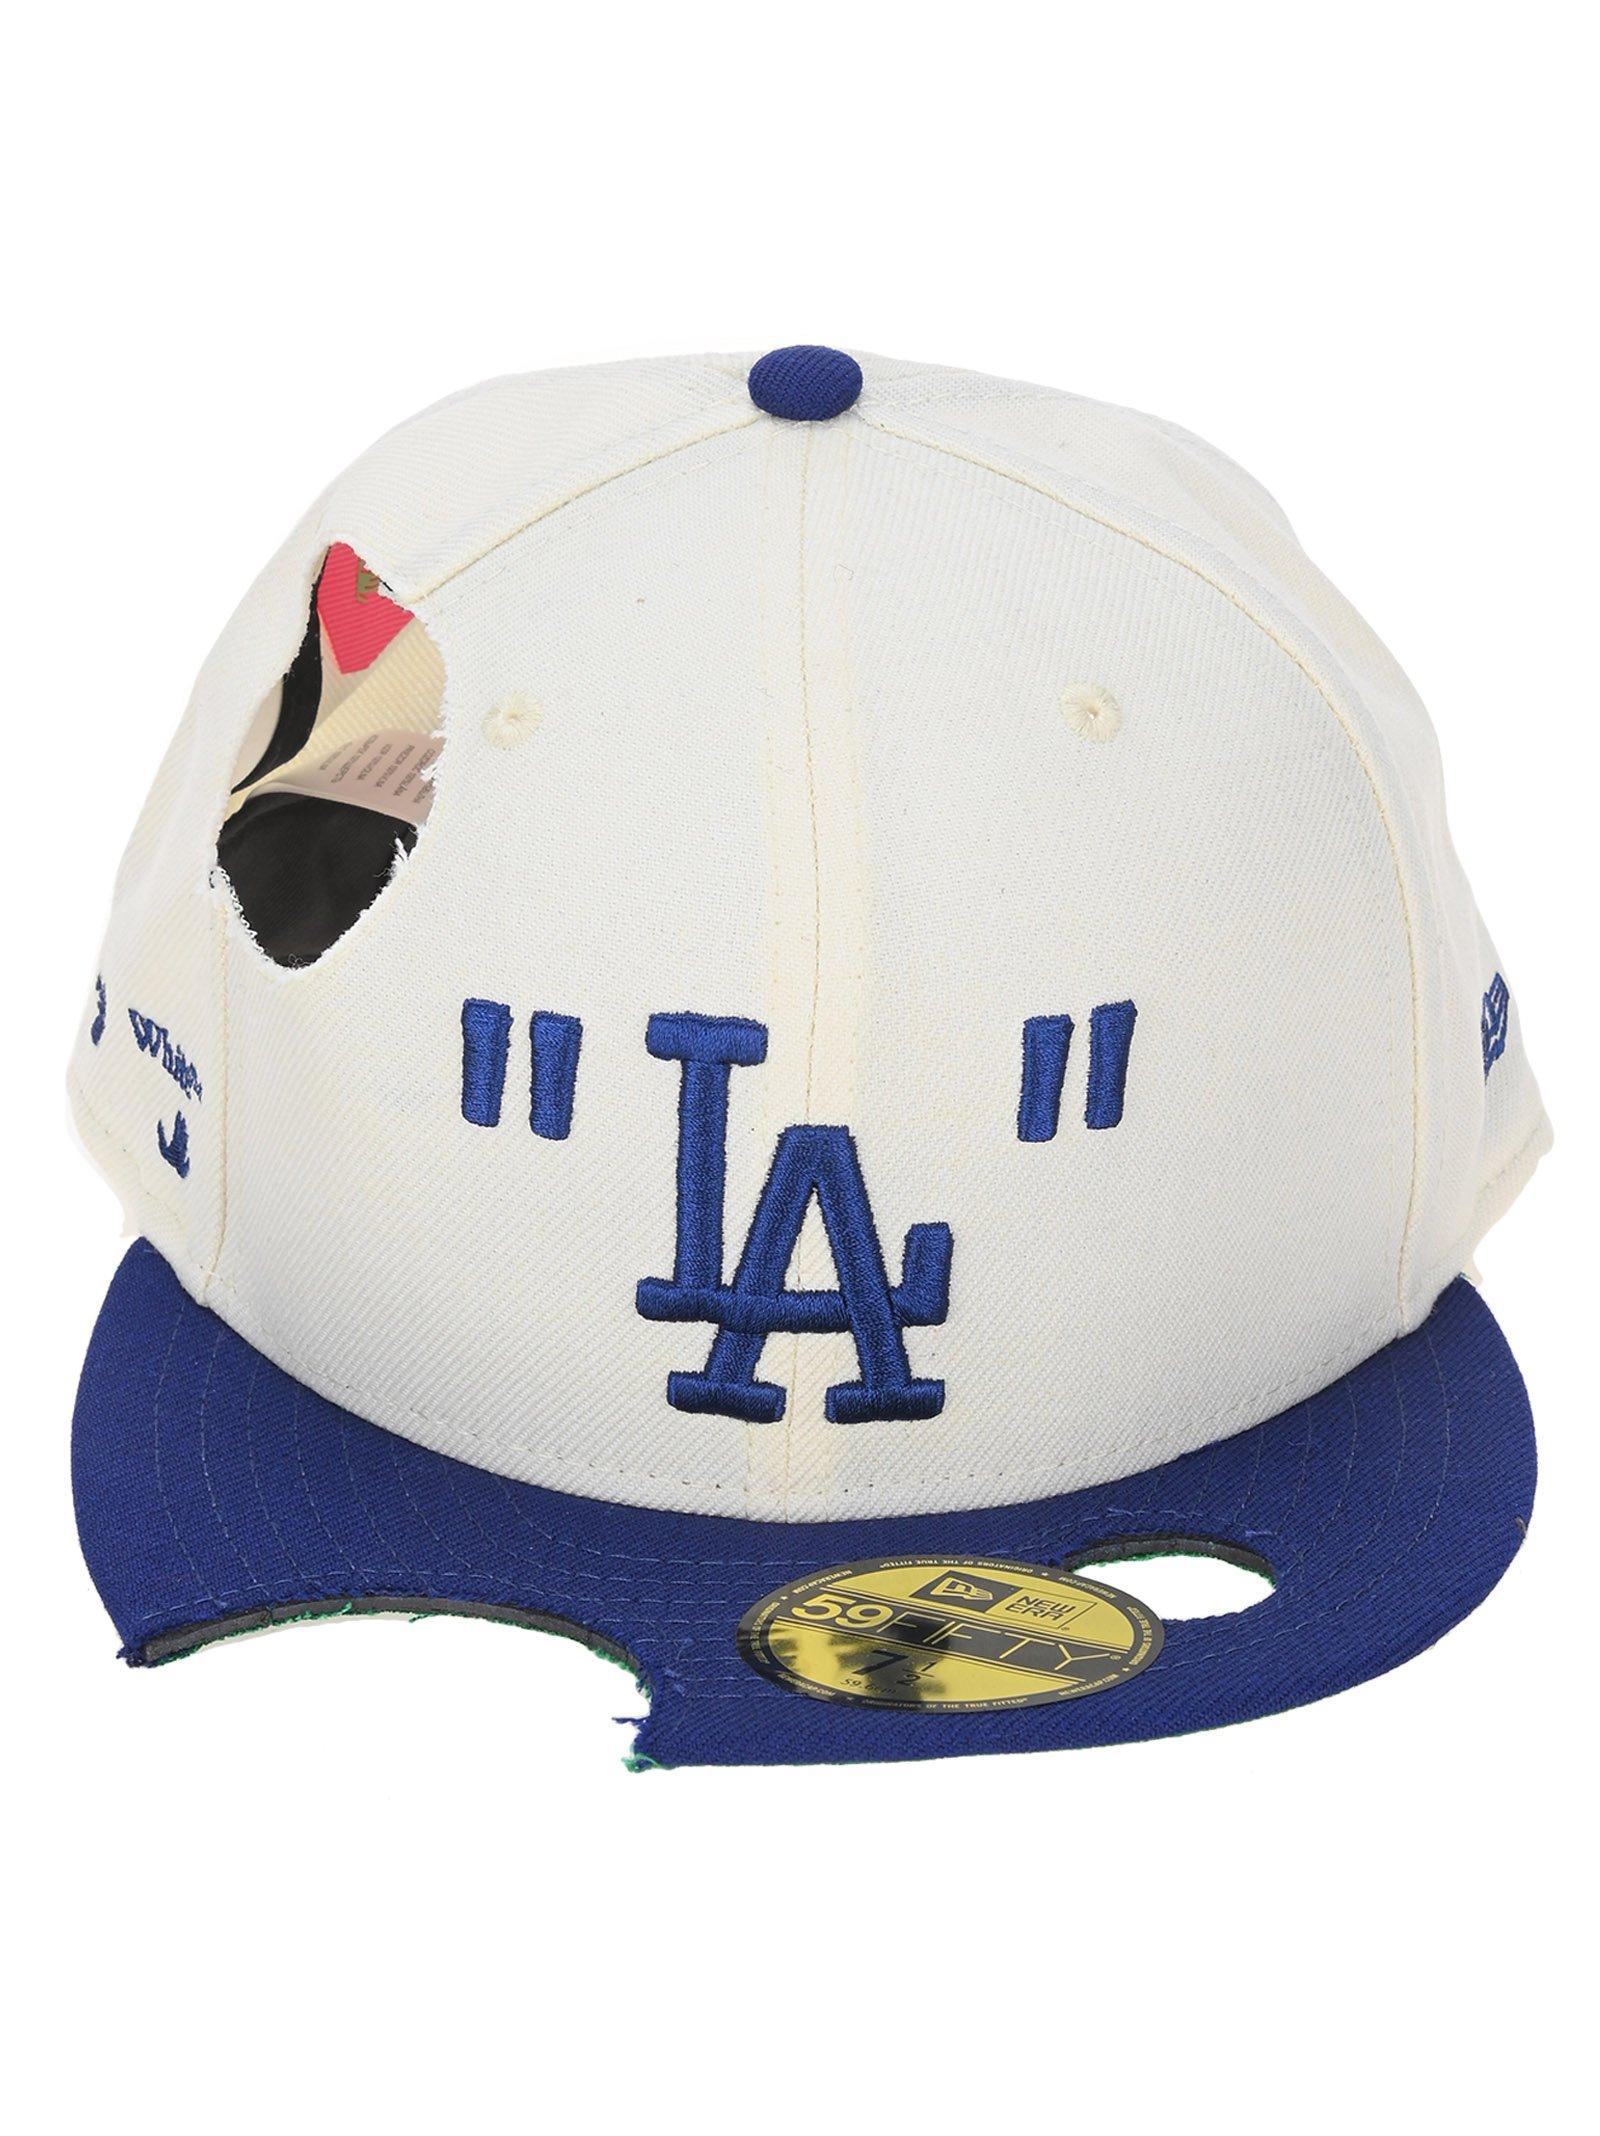 OFF-WHITE × NEW ERA × MLB BASEBALL CAP